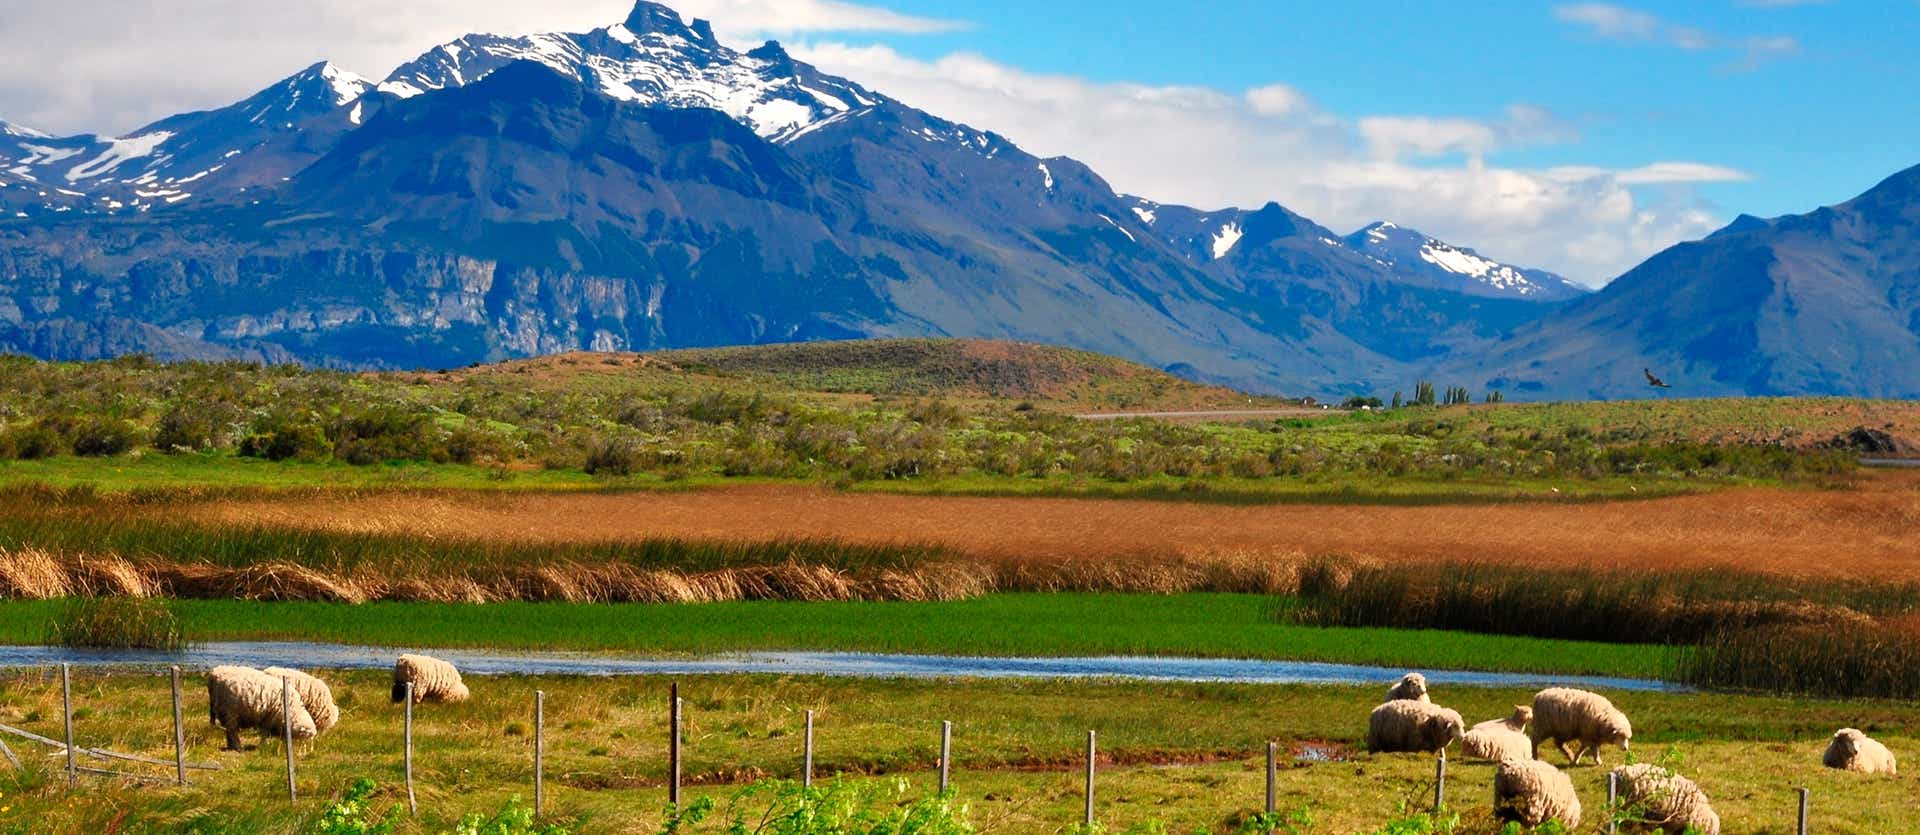 Landscapes of El Calafate <span class="iconos separador"></span> Patagonia